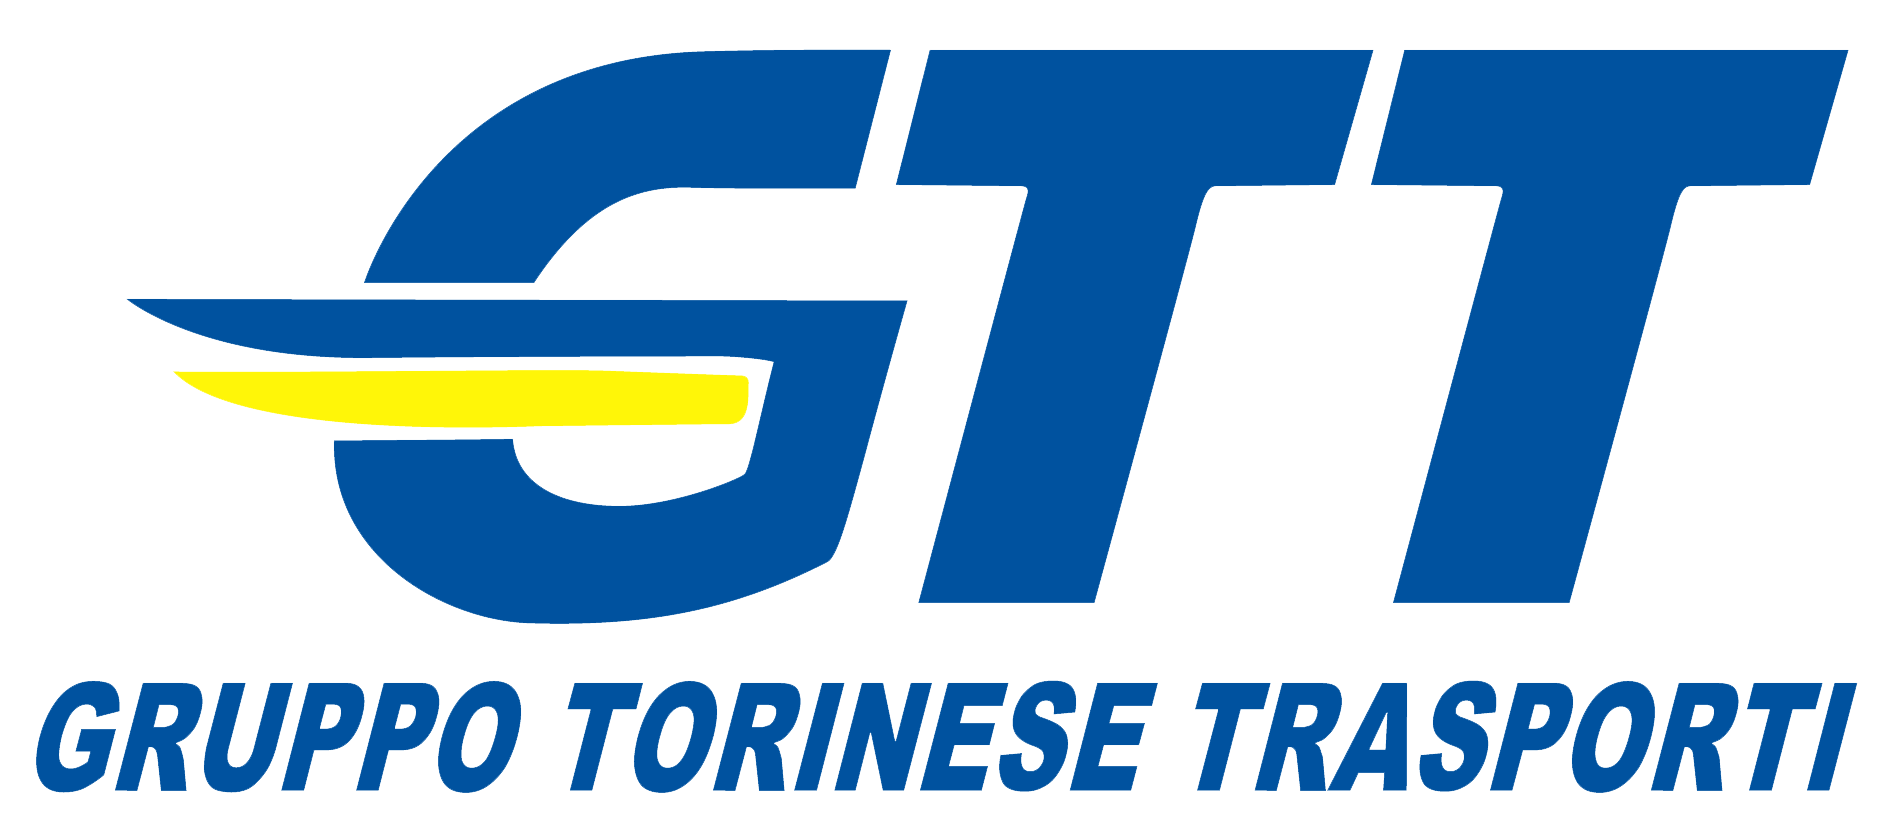 Logo GTT